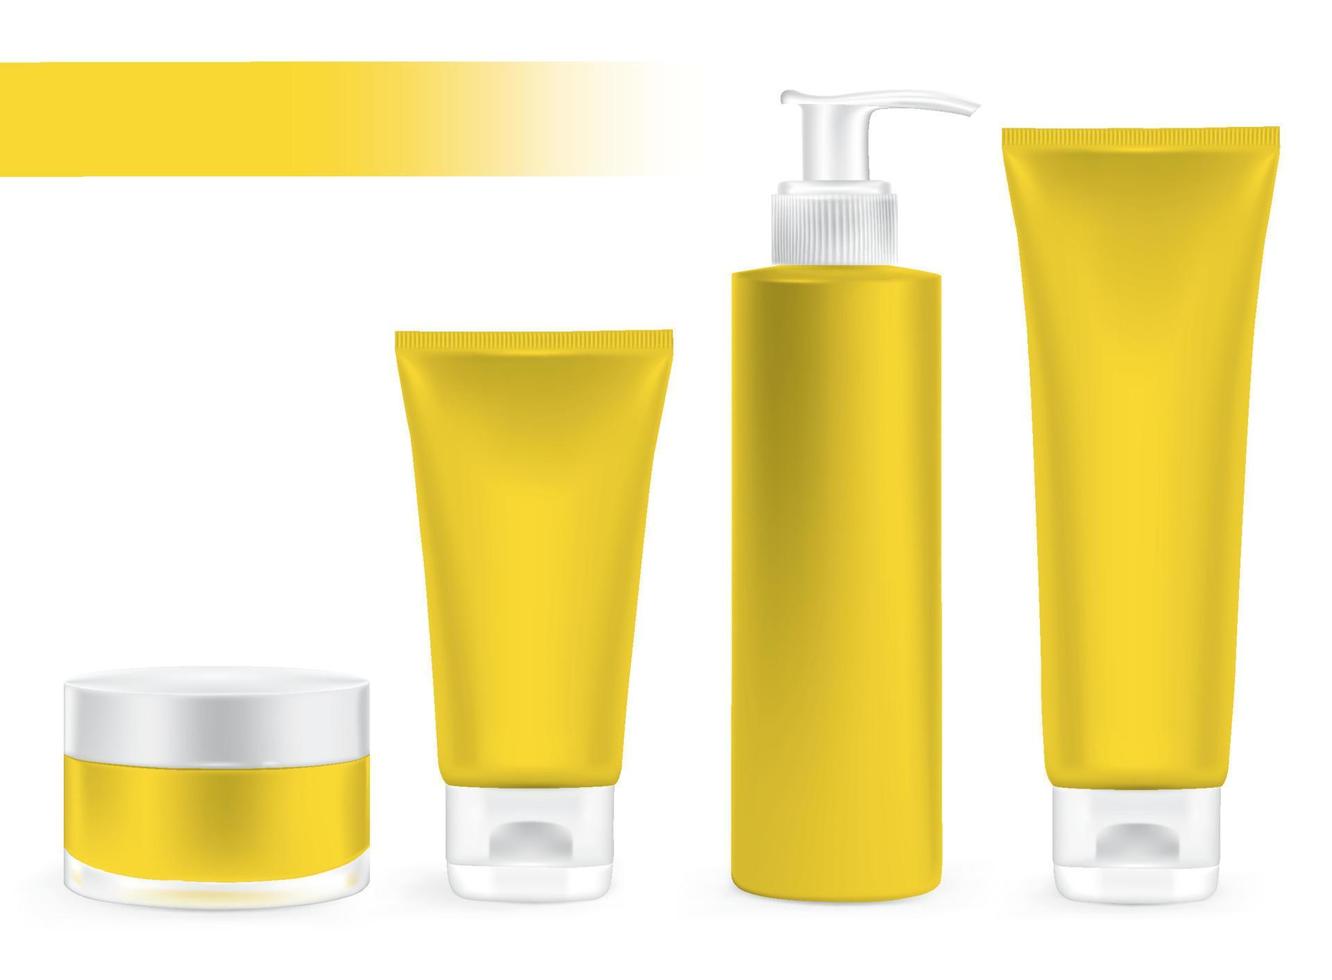 envases de embalaje de color amarillo, paquete de crema, conjunto de productos de belleza. vector